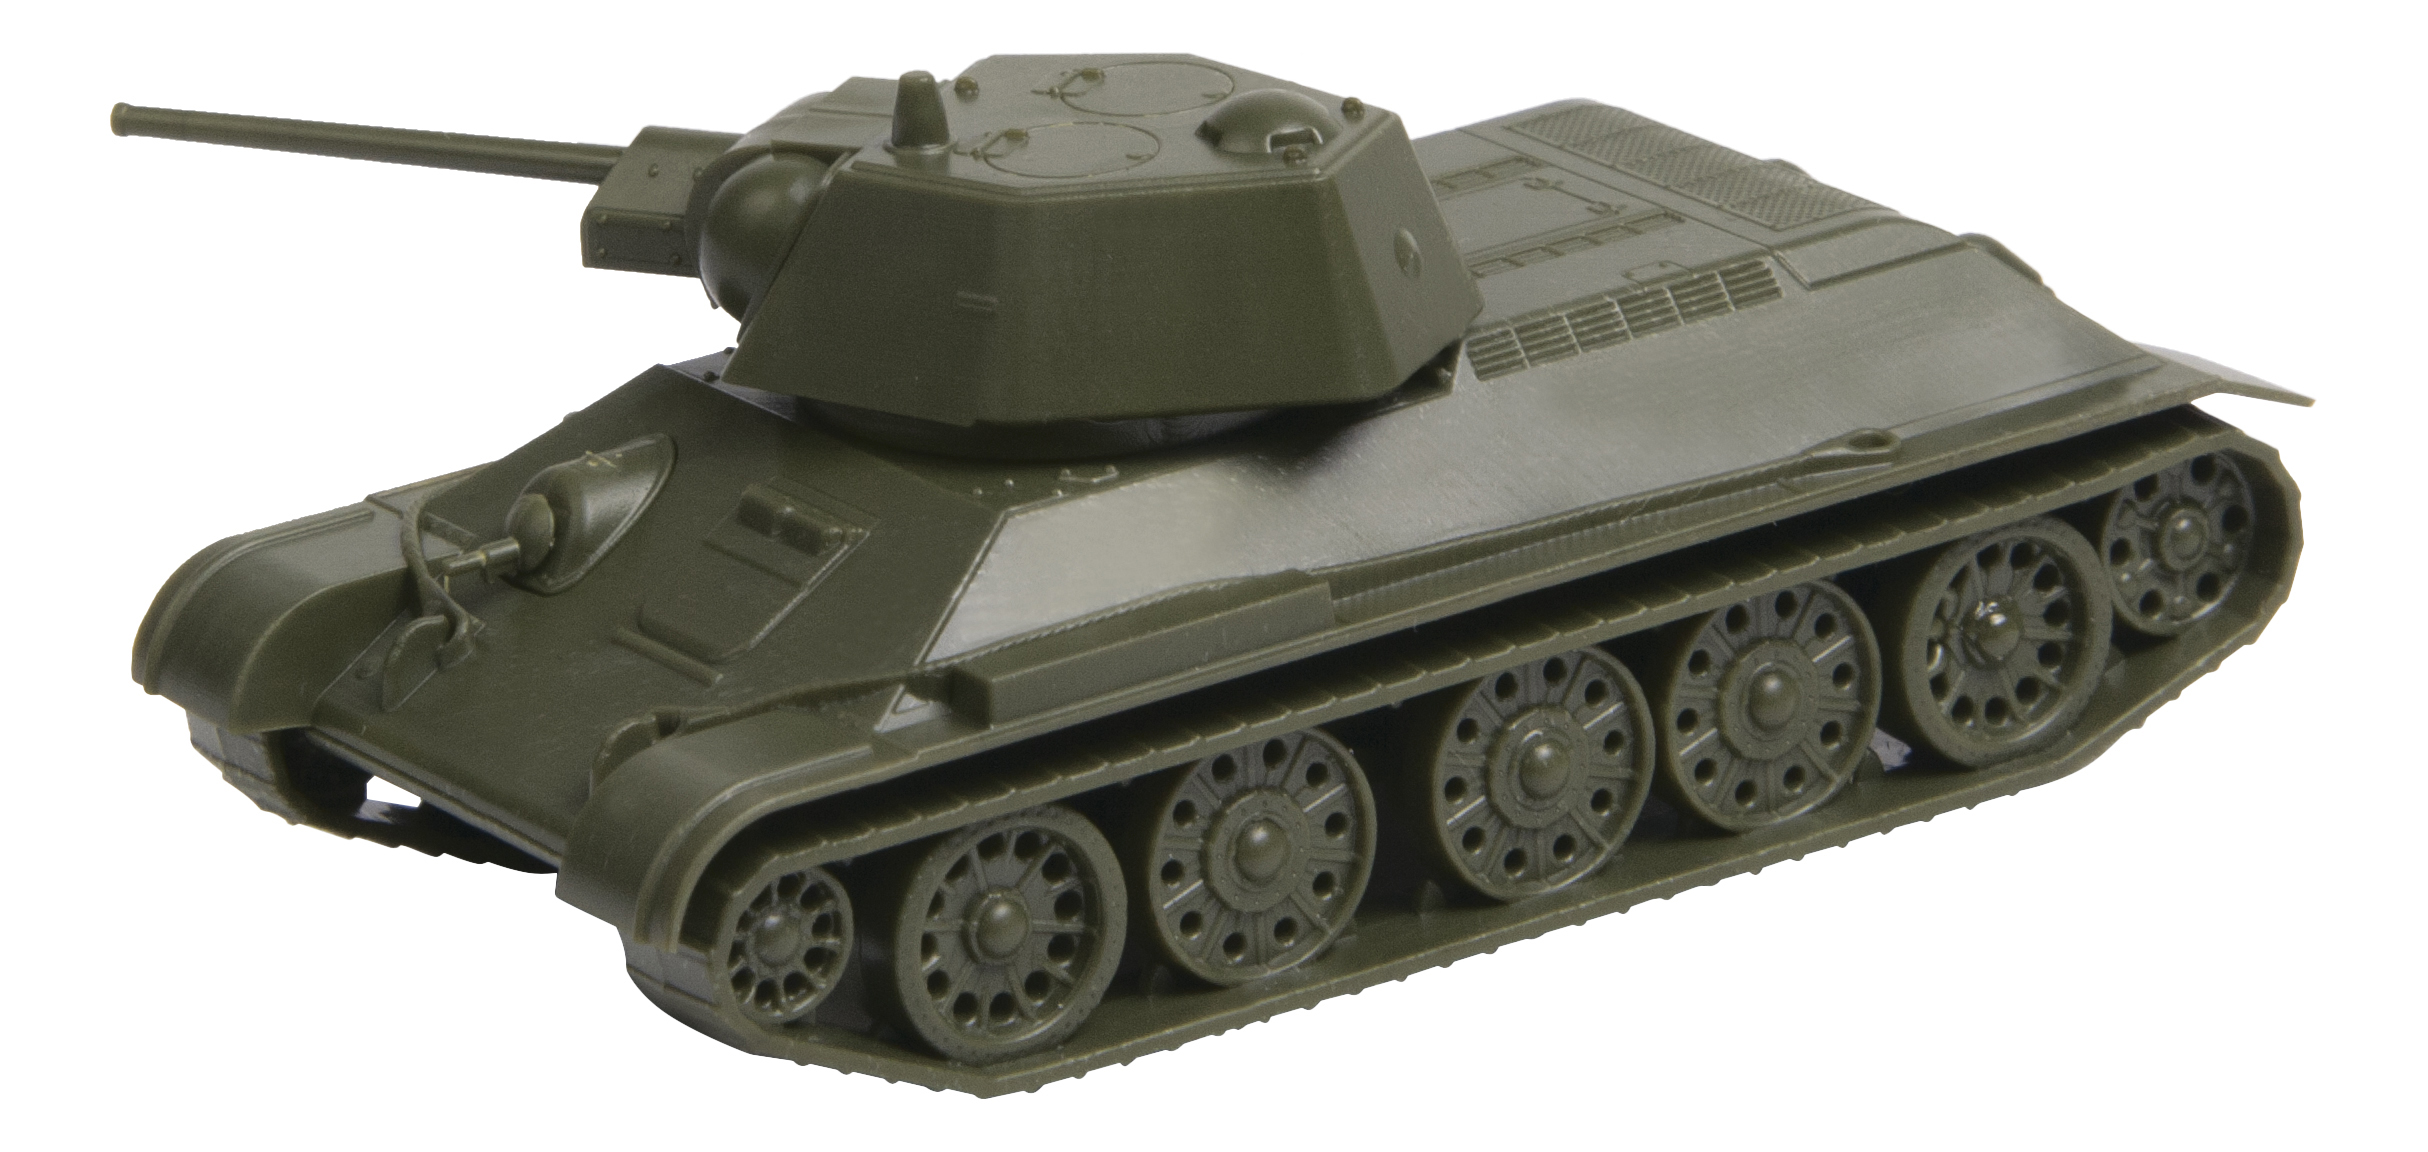 Купить Советский средний танк Т-34/76, Модели для сборки Zvezda Советский средний танк Т-34/76,